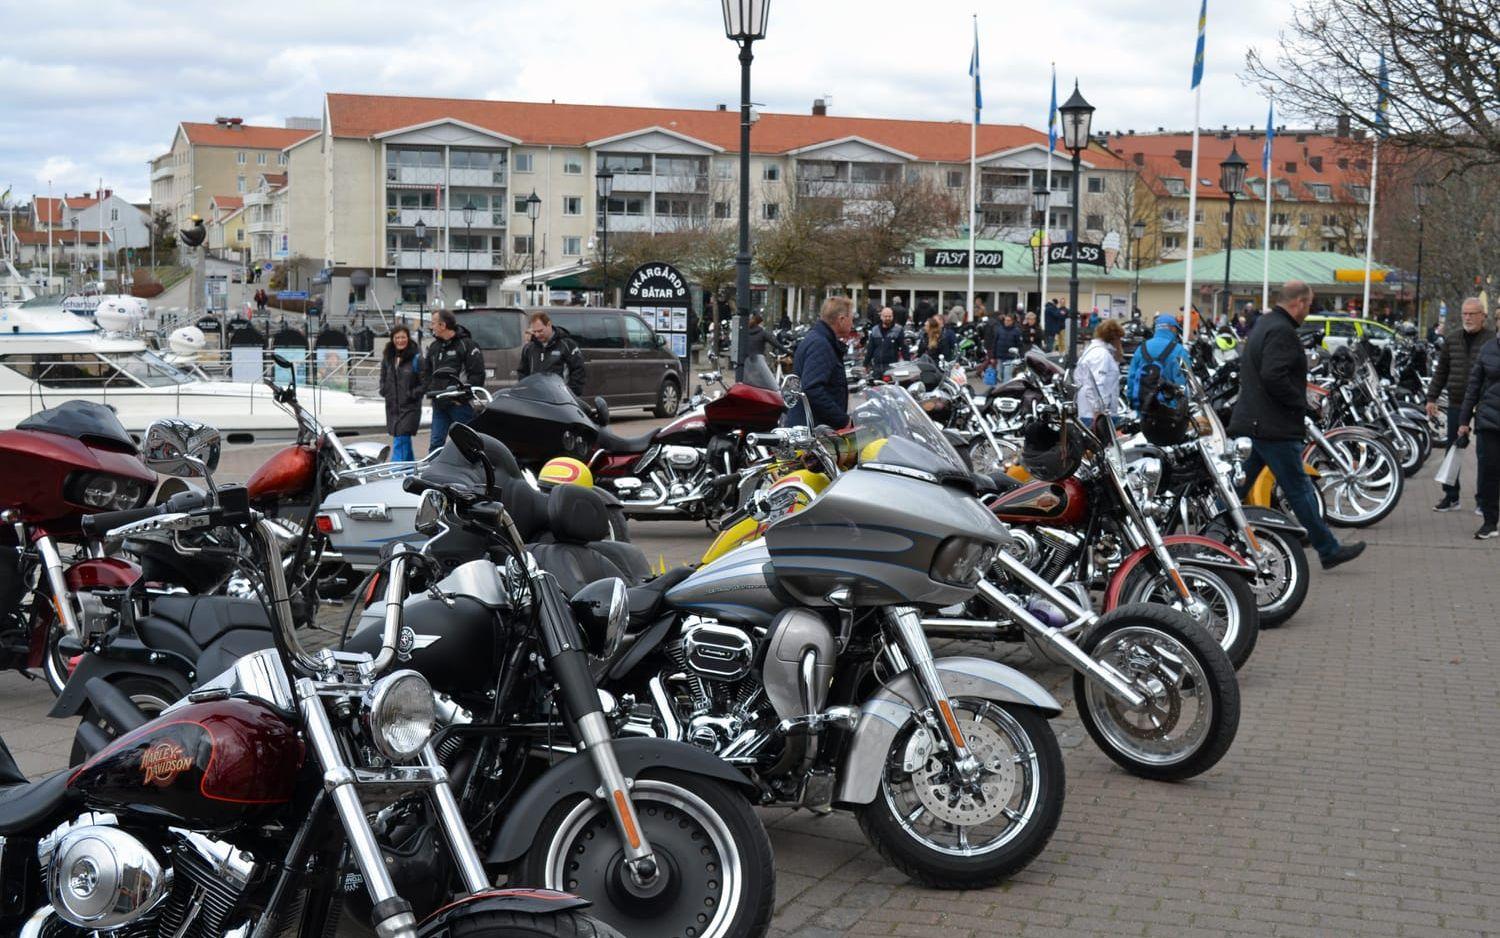 Hundra motorcyklar modell HD kom från Norge. Bild: Ulf Blomgren